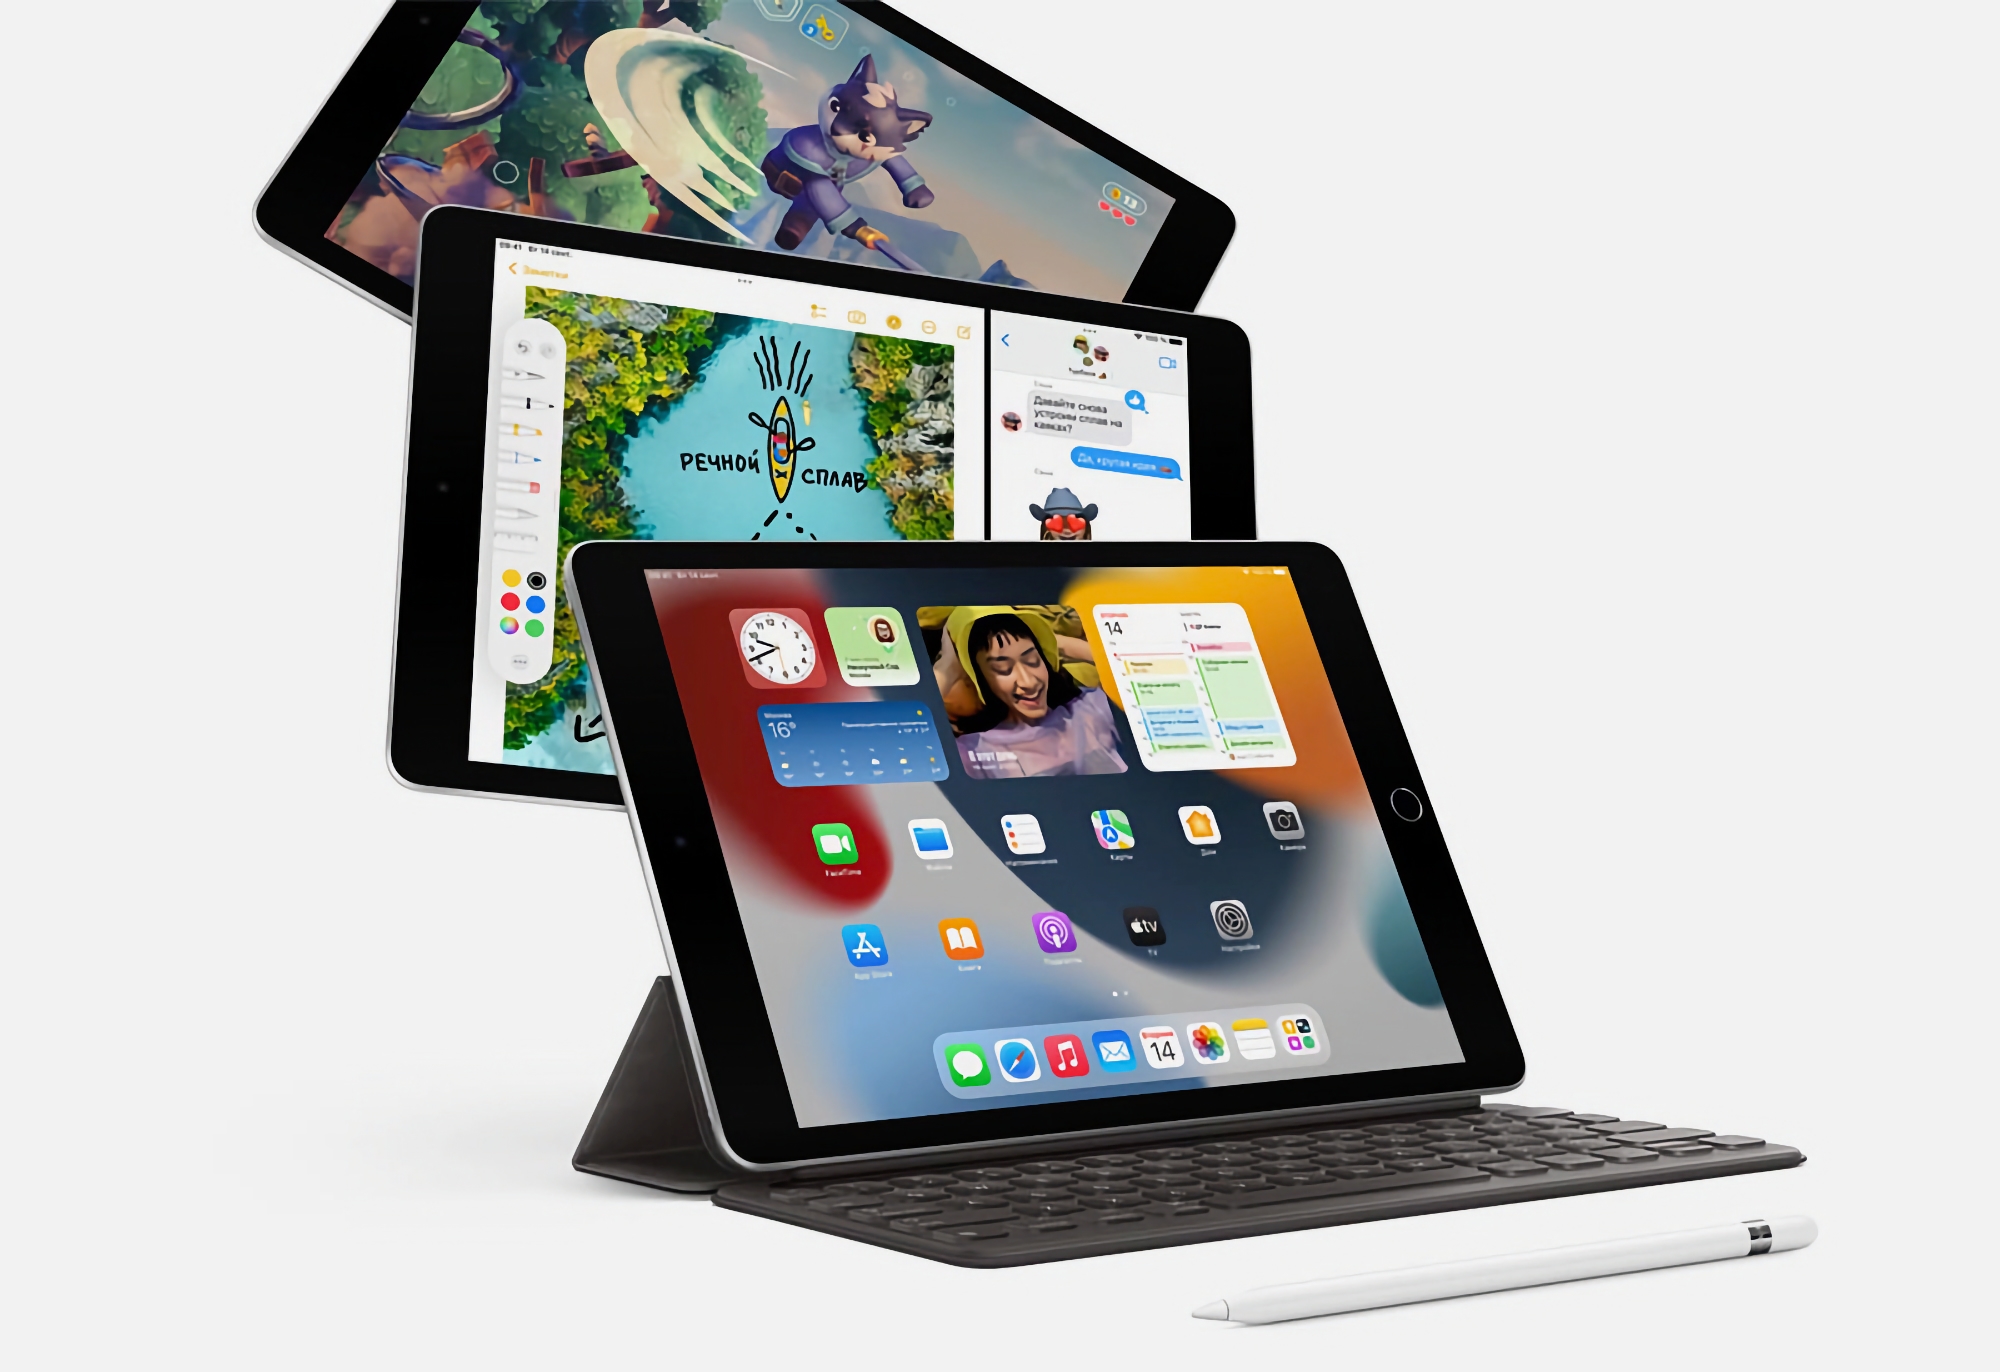 L'iPad di 9a generazione con chip A13 Bionic e display Retina è in vendita su Amazon con uno sconto fino a 80 dollari